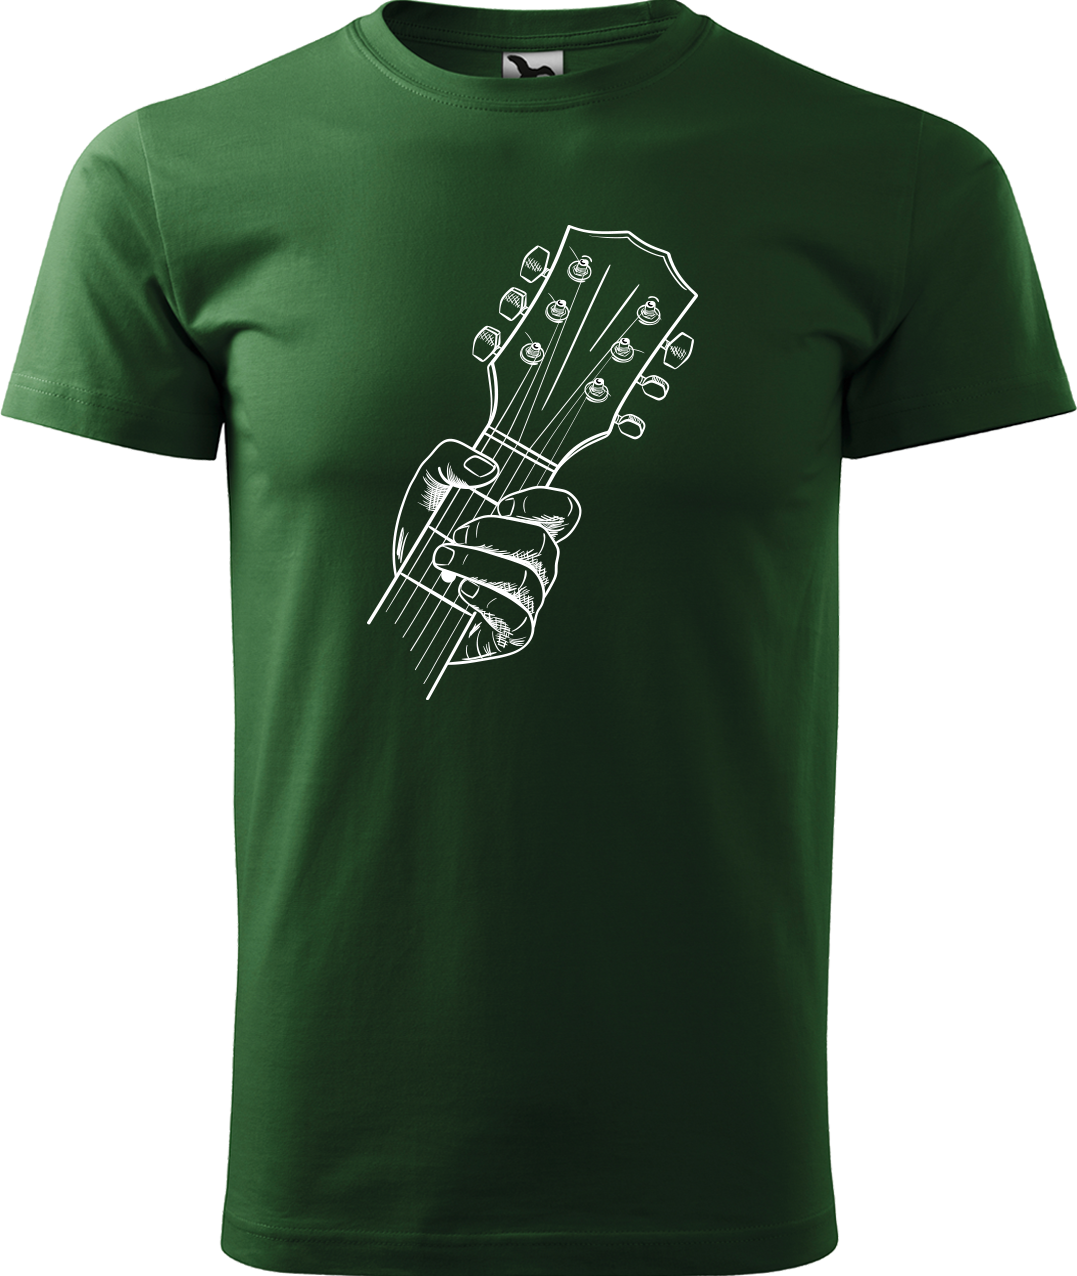 Pánské tričko s kytarou - Hlava kytary Velikost: 3XL, Barva: Lahvově zelená (06)